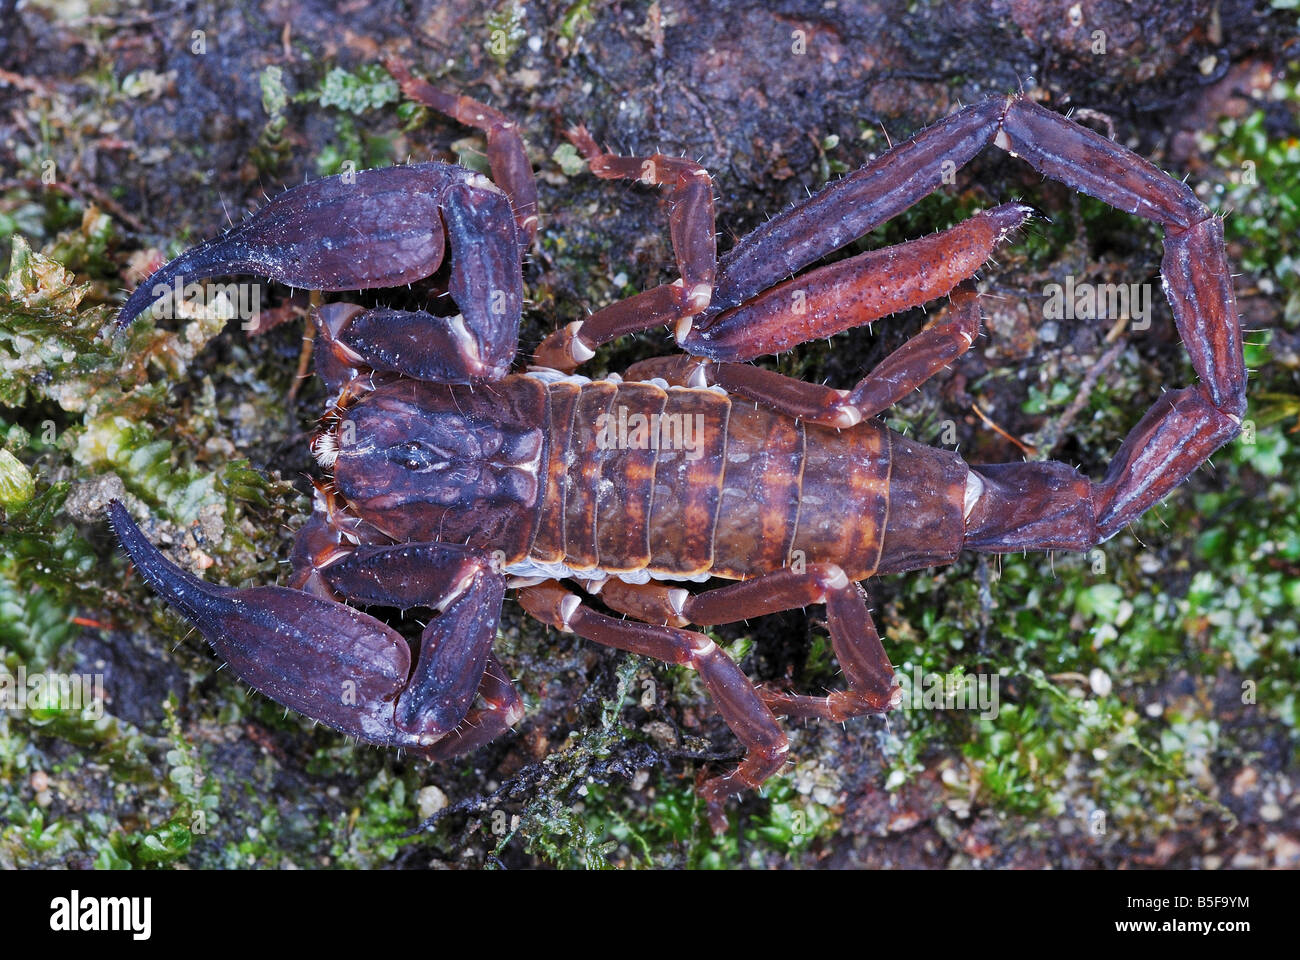 Chaerilus pictus Familie: chaerilidae männlich. Eine extrem seltene Arten von Scorpion. Zum trans Himalaya Wälder beschränkt. Stockfoto